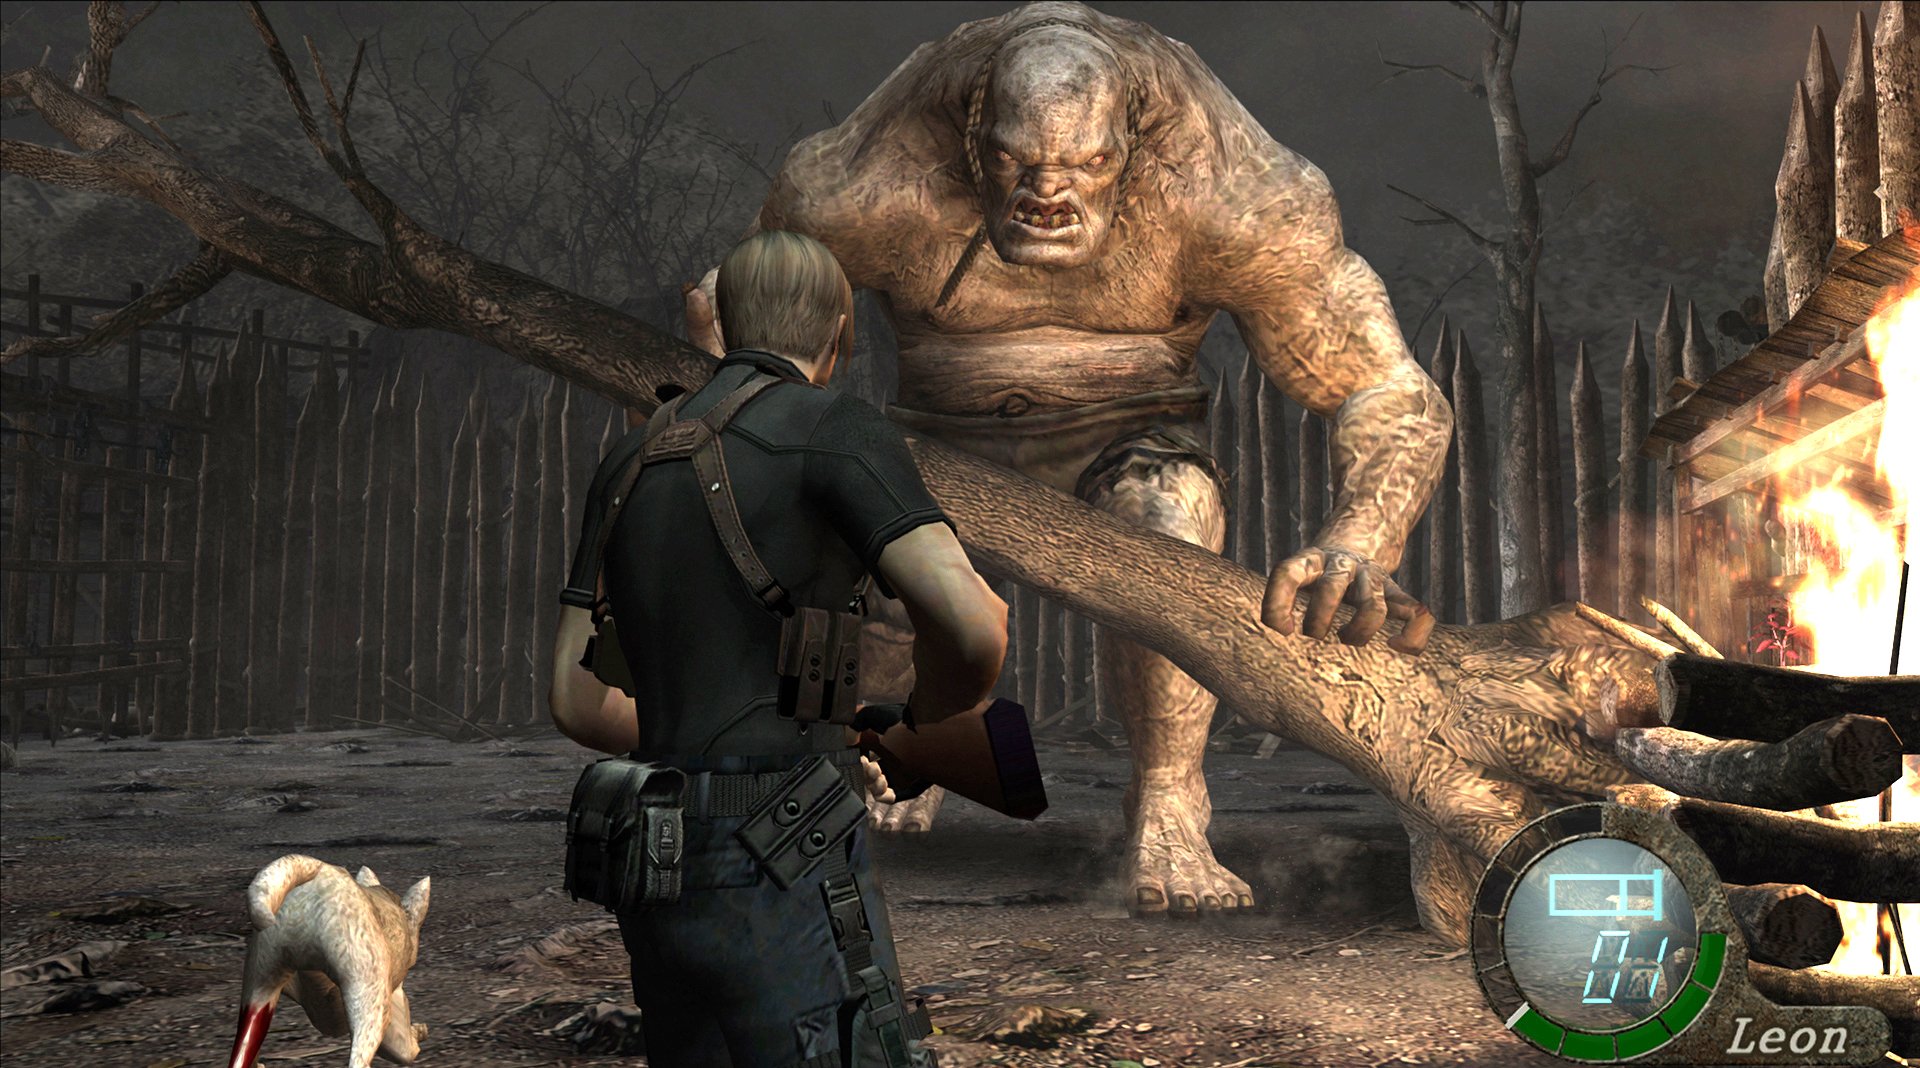 Free: Resident Evil: Revelations Resident Evil: The Umbrella